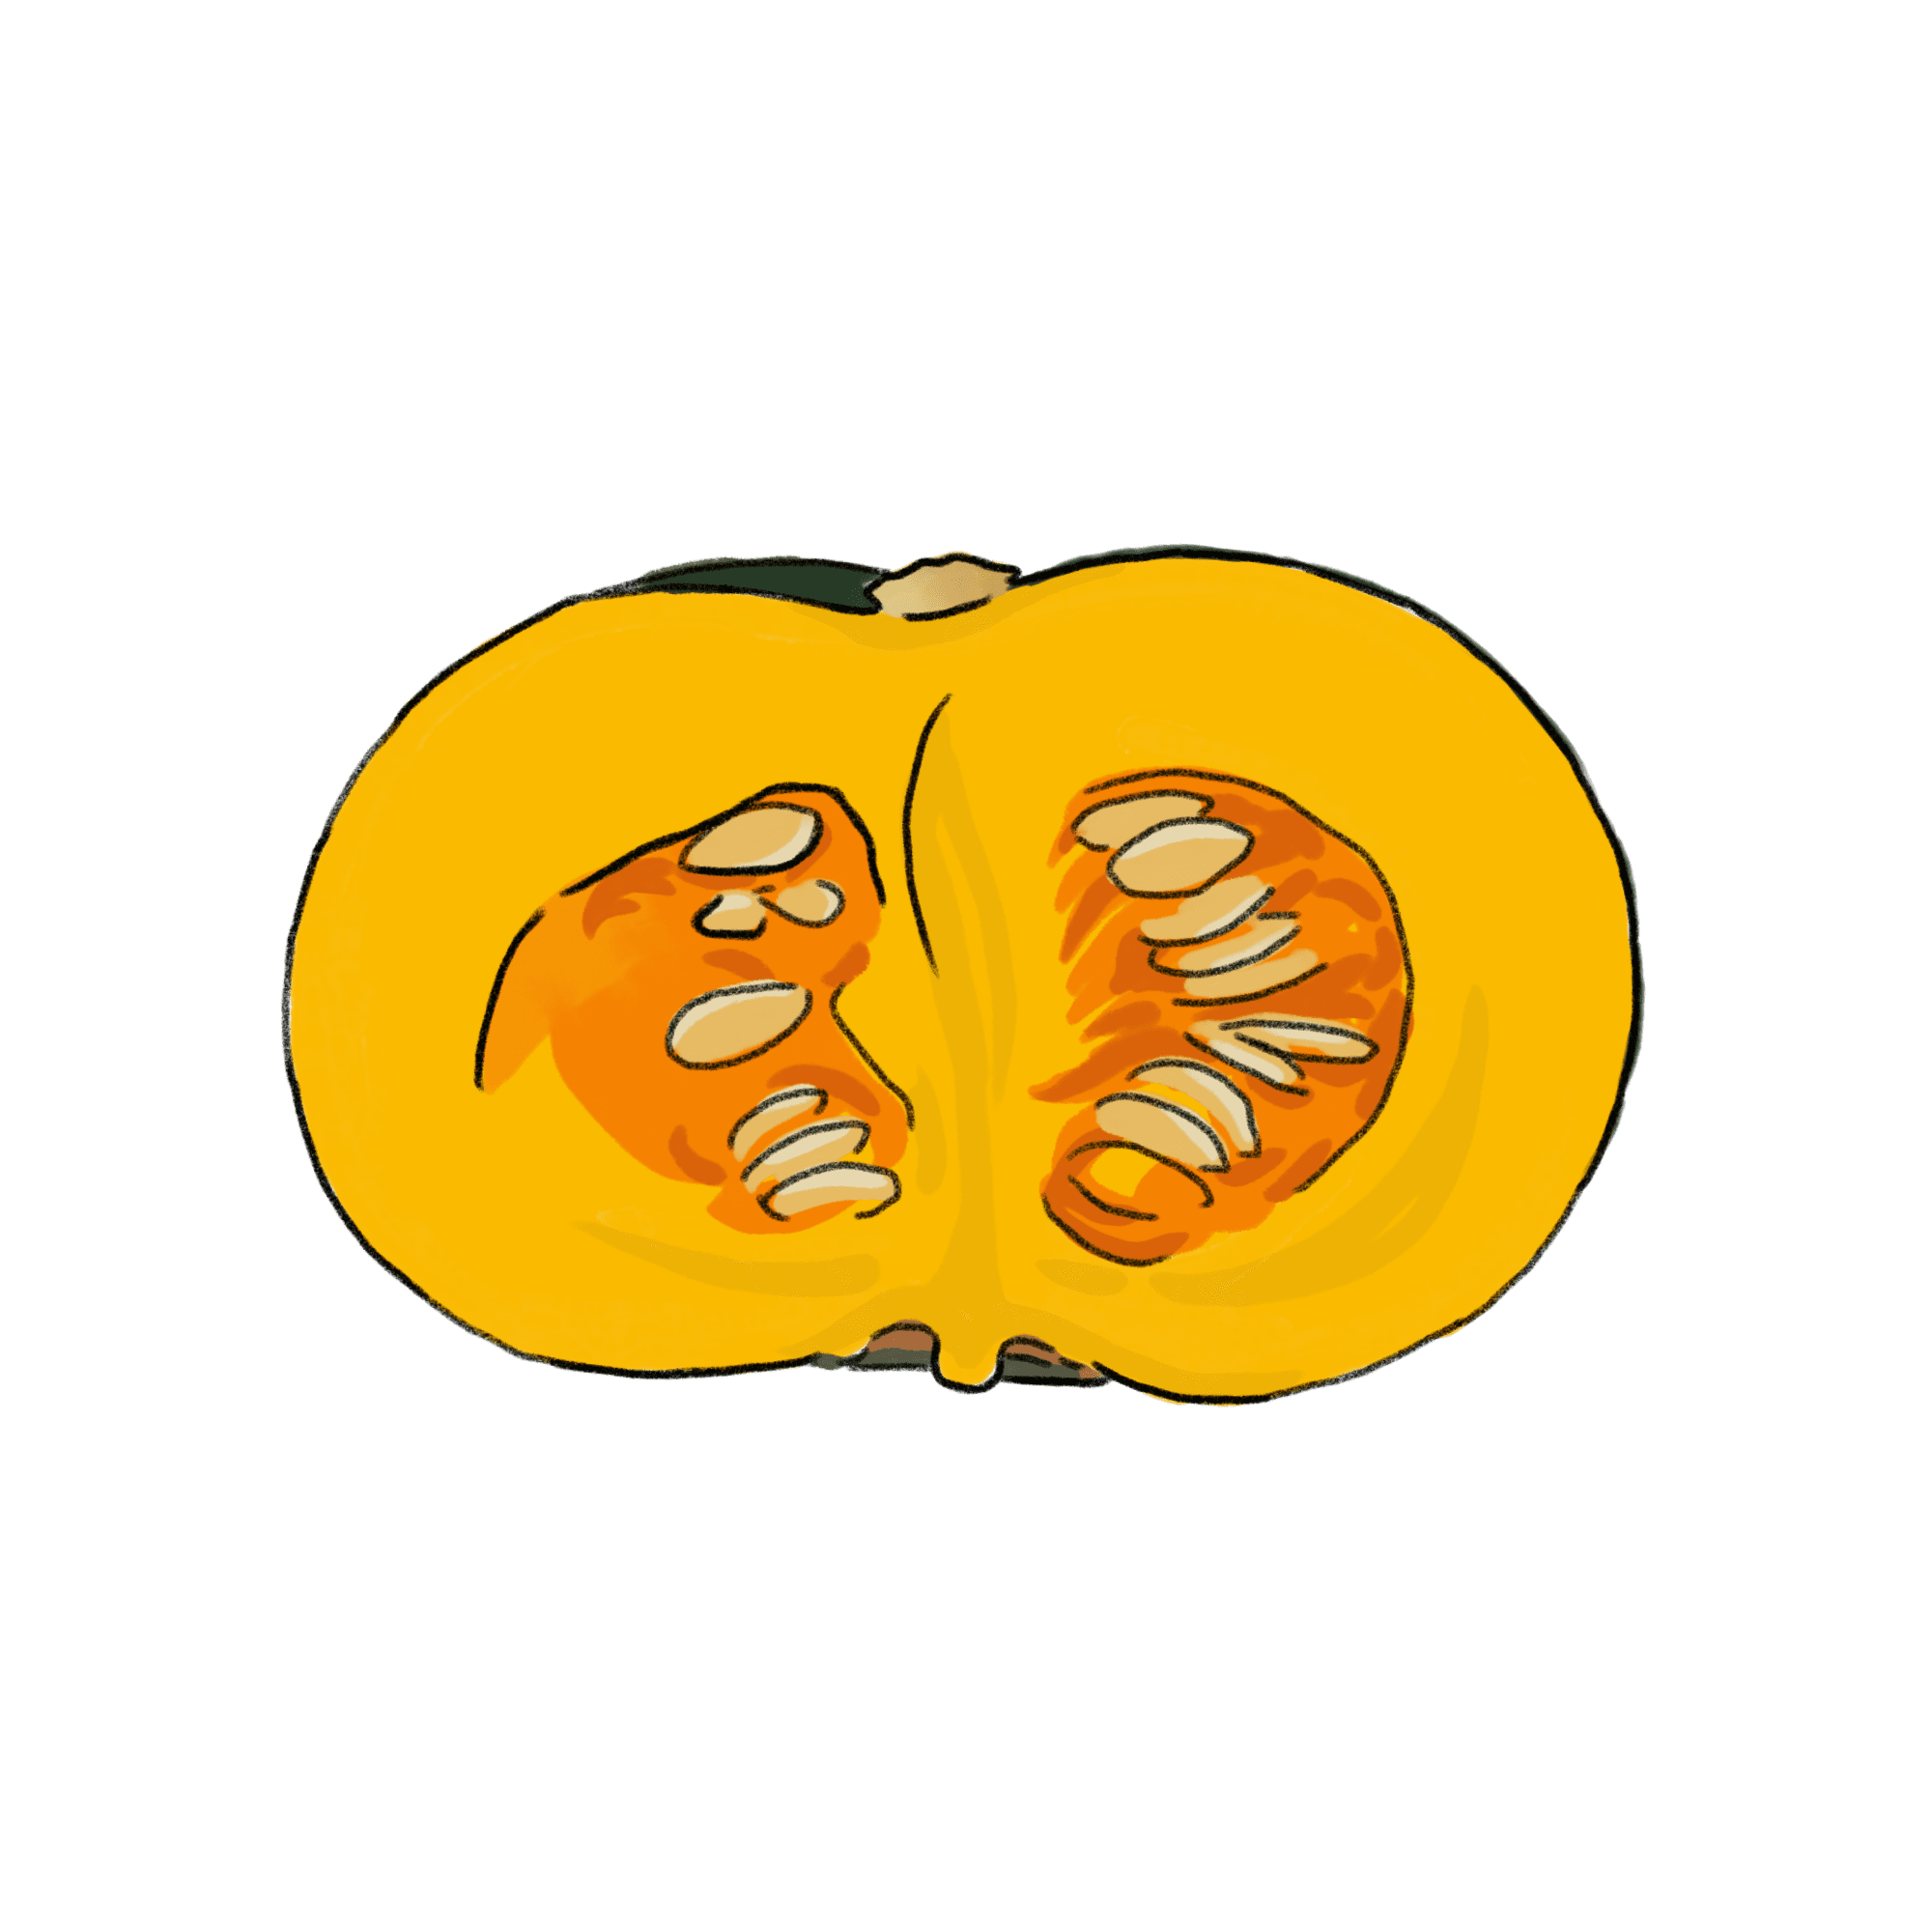 かぼちゃのイラスト 02 フリー素材 Greenstock40